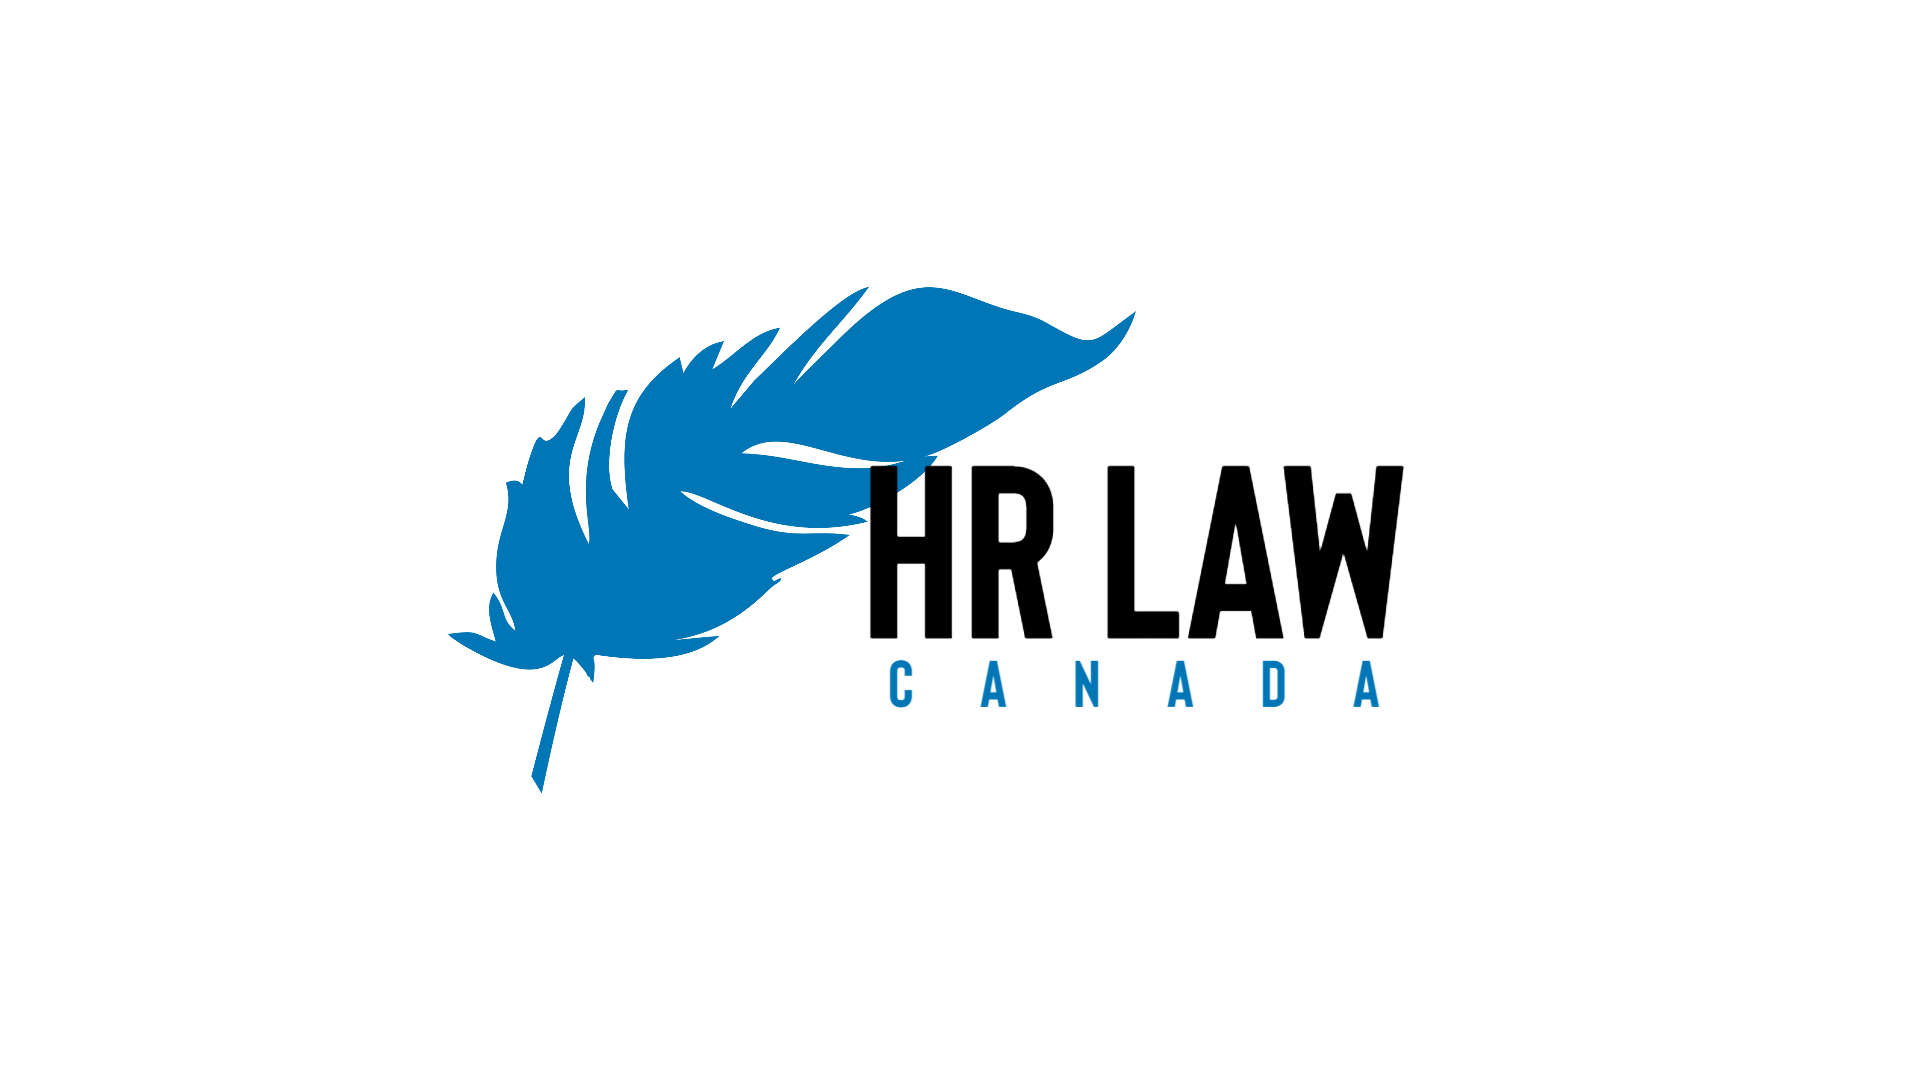 HR Law Canada